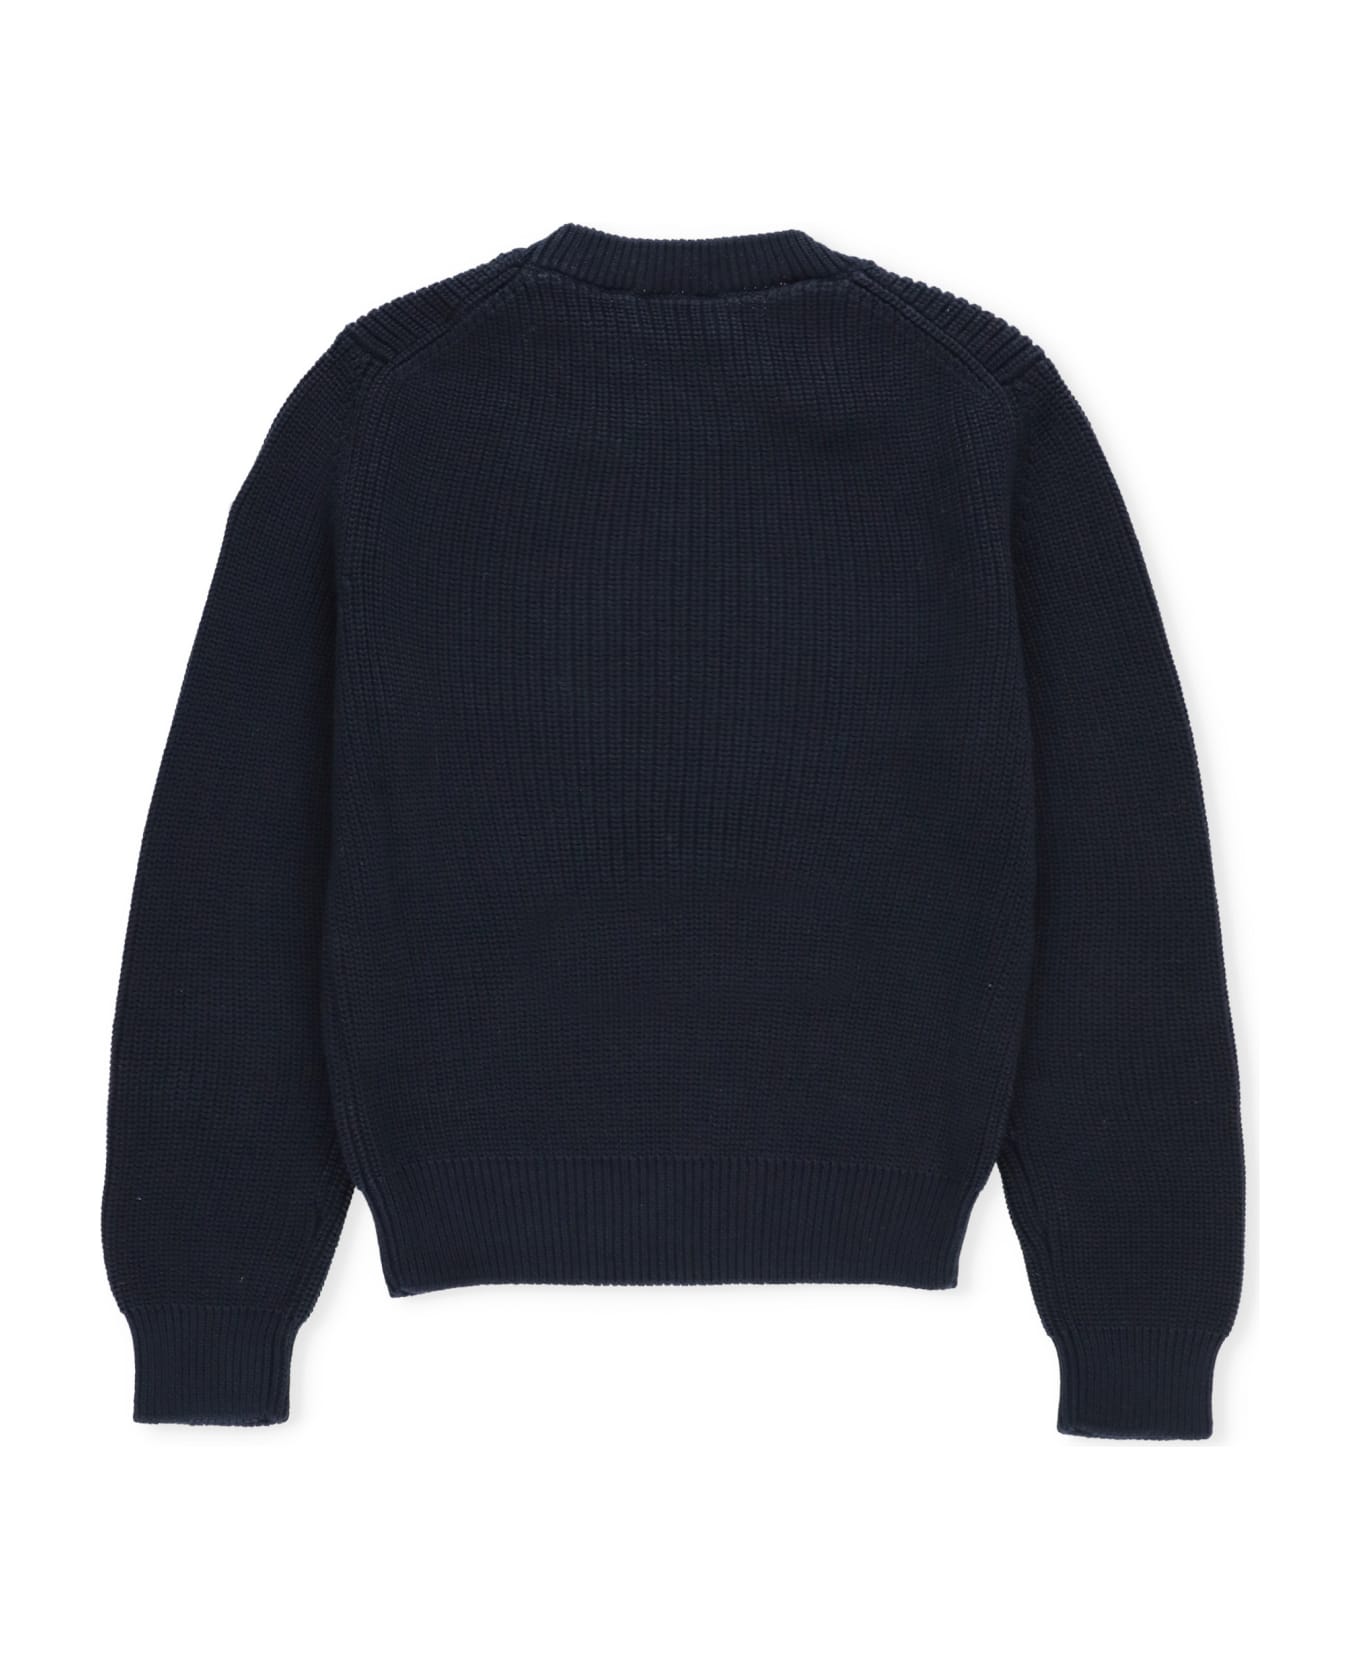 Moncler Cotton Sweater - Blue ニットウェア＆スウェットシャツ